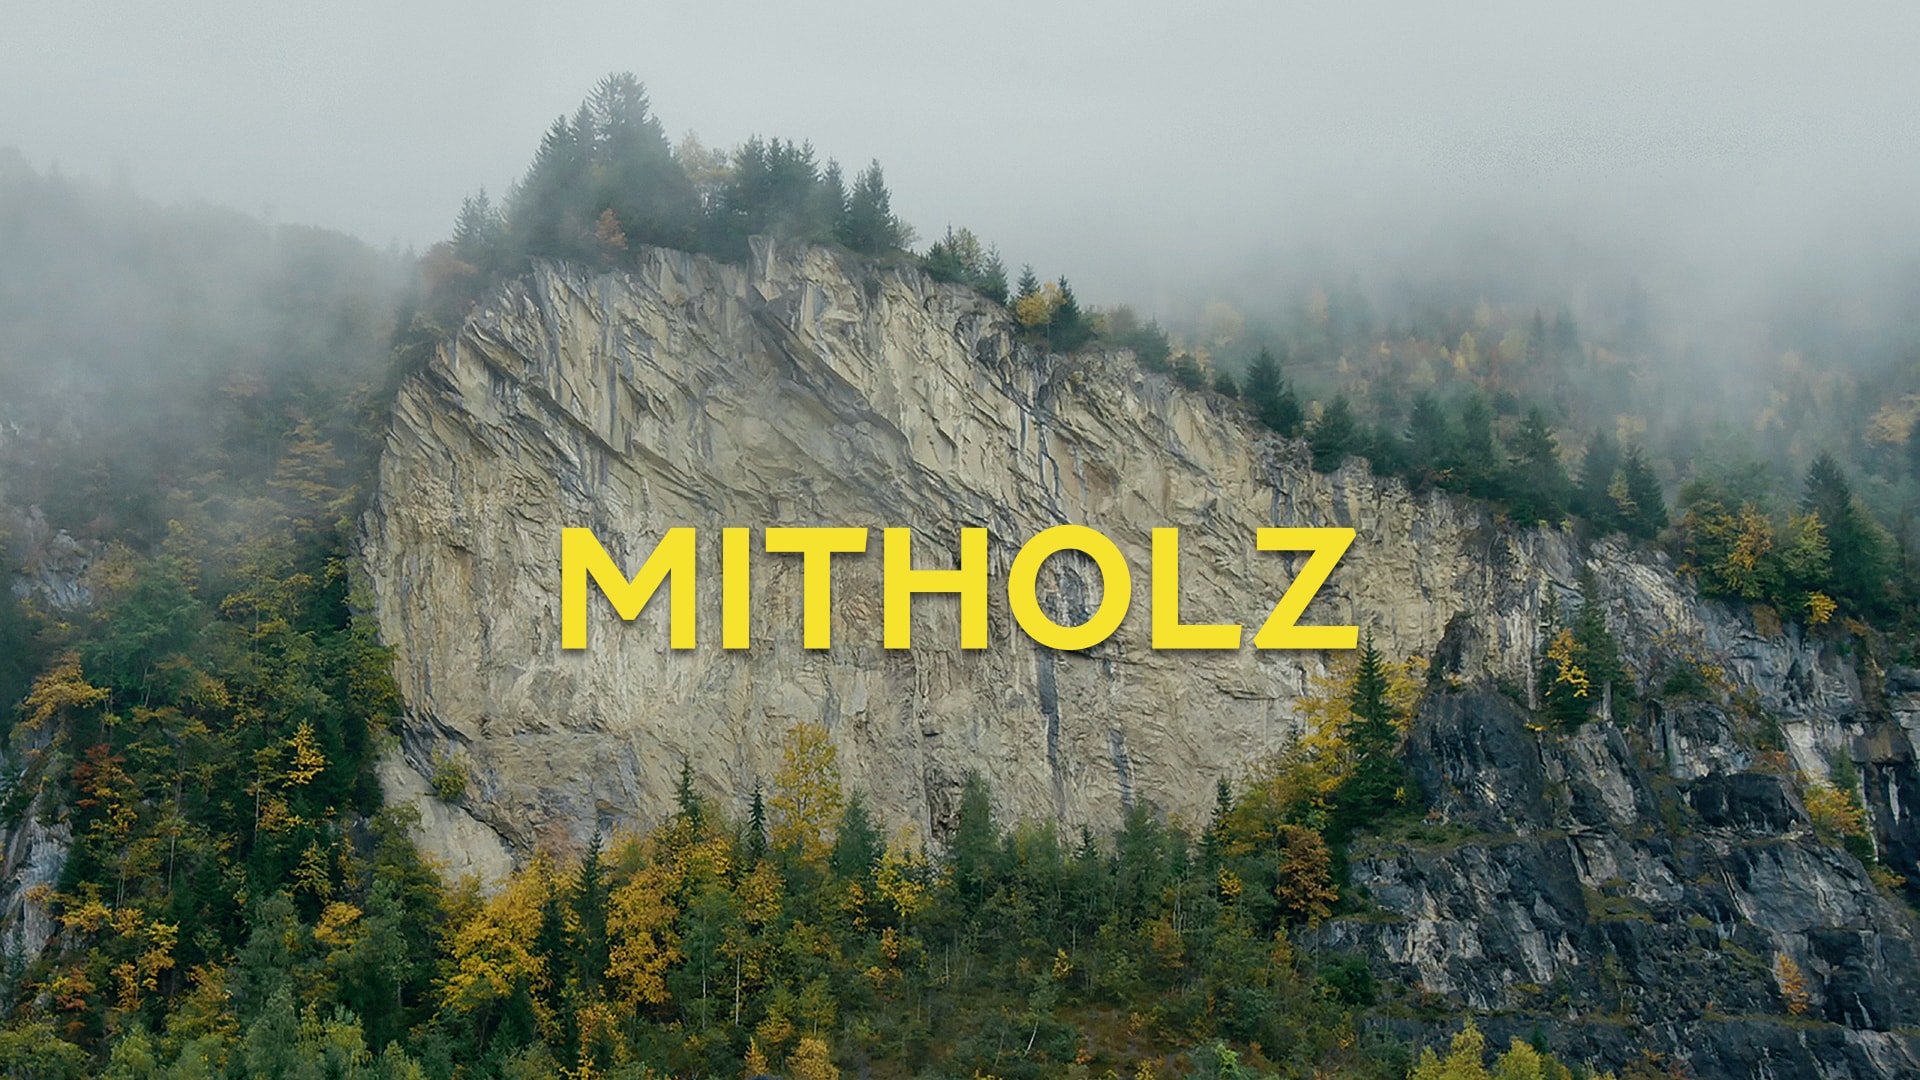 Mitholz, l'héritage explosif de l'armée